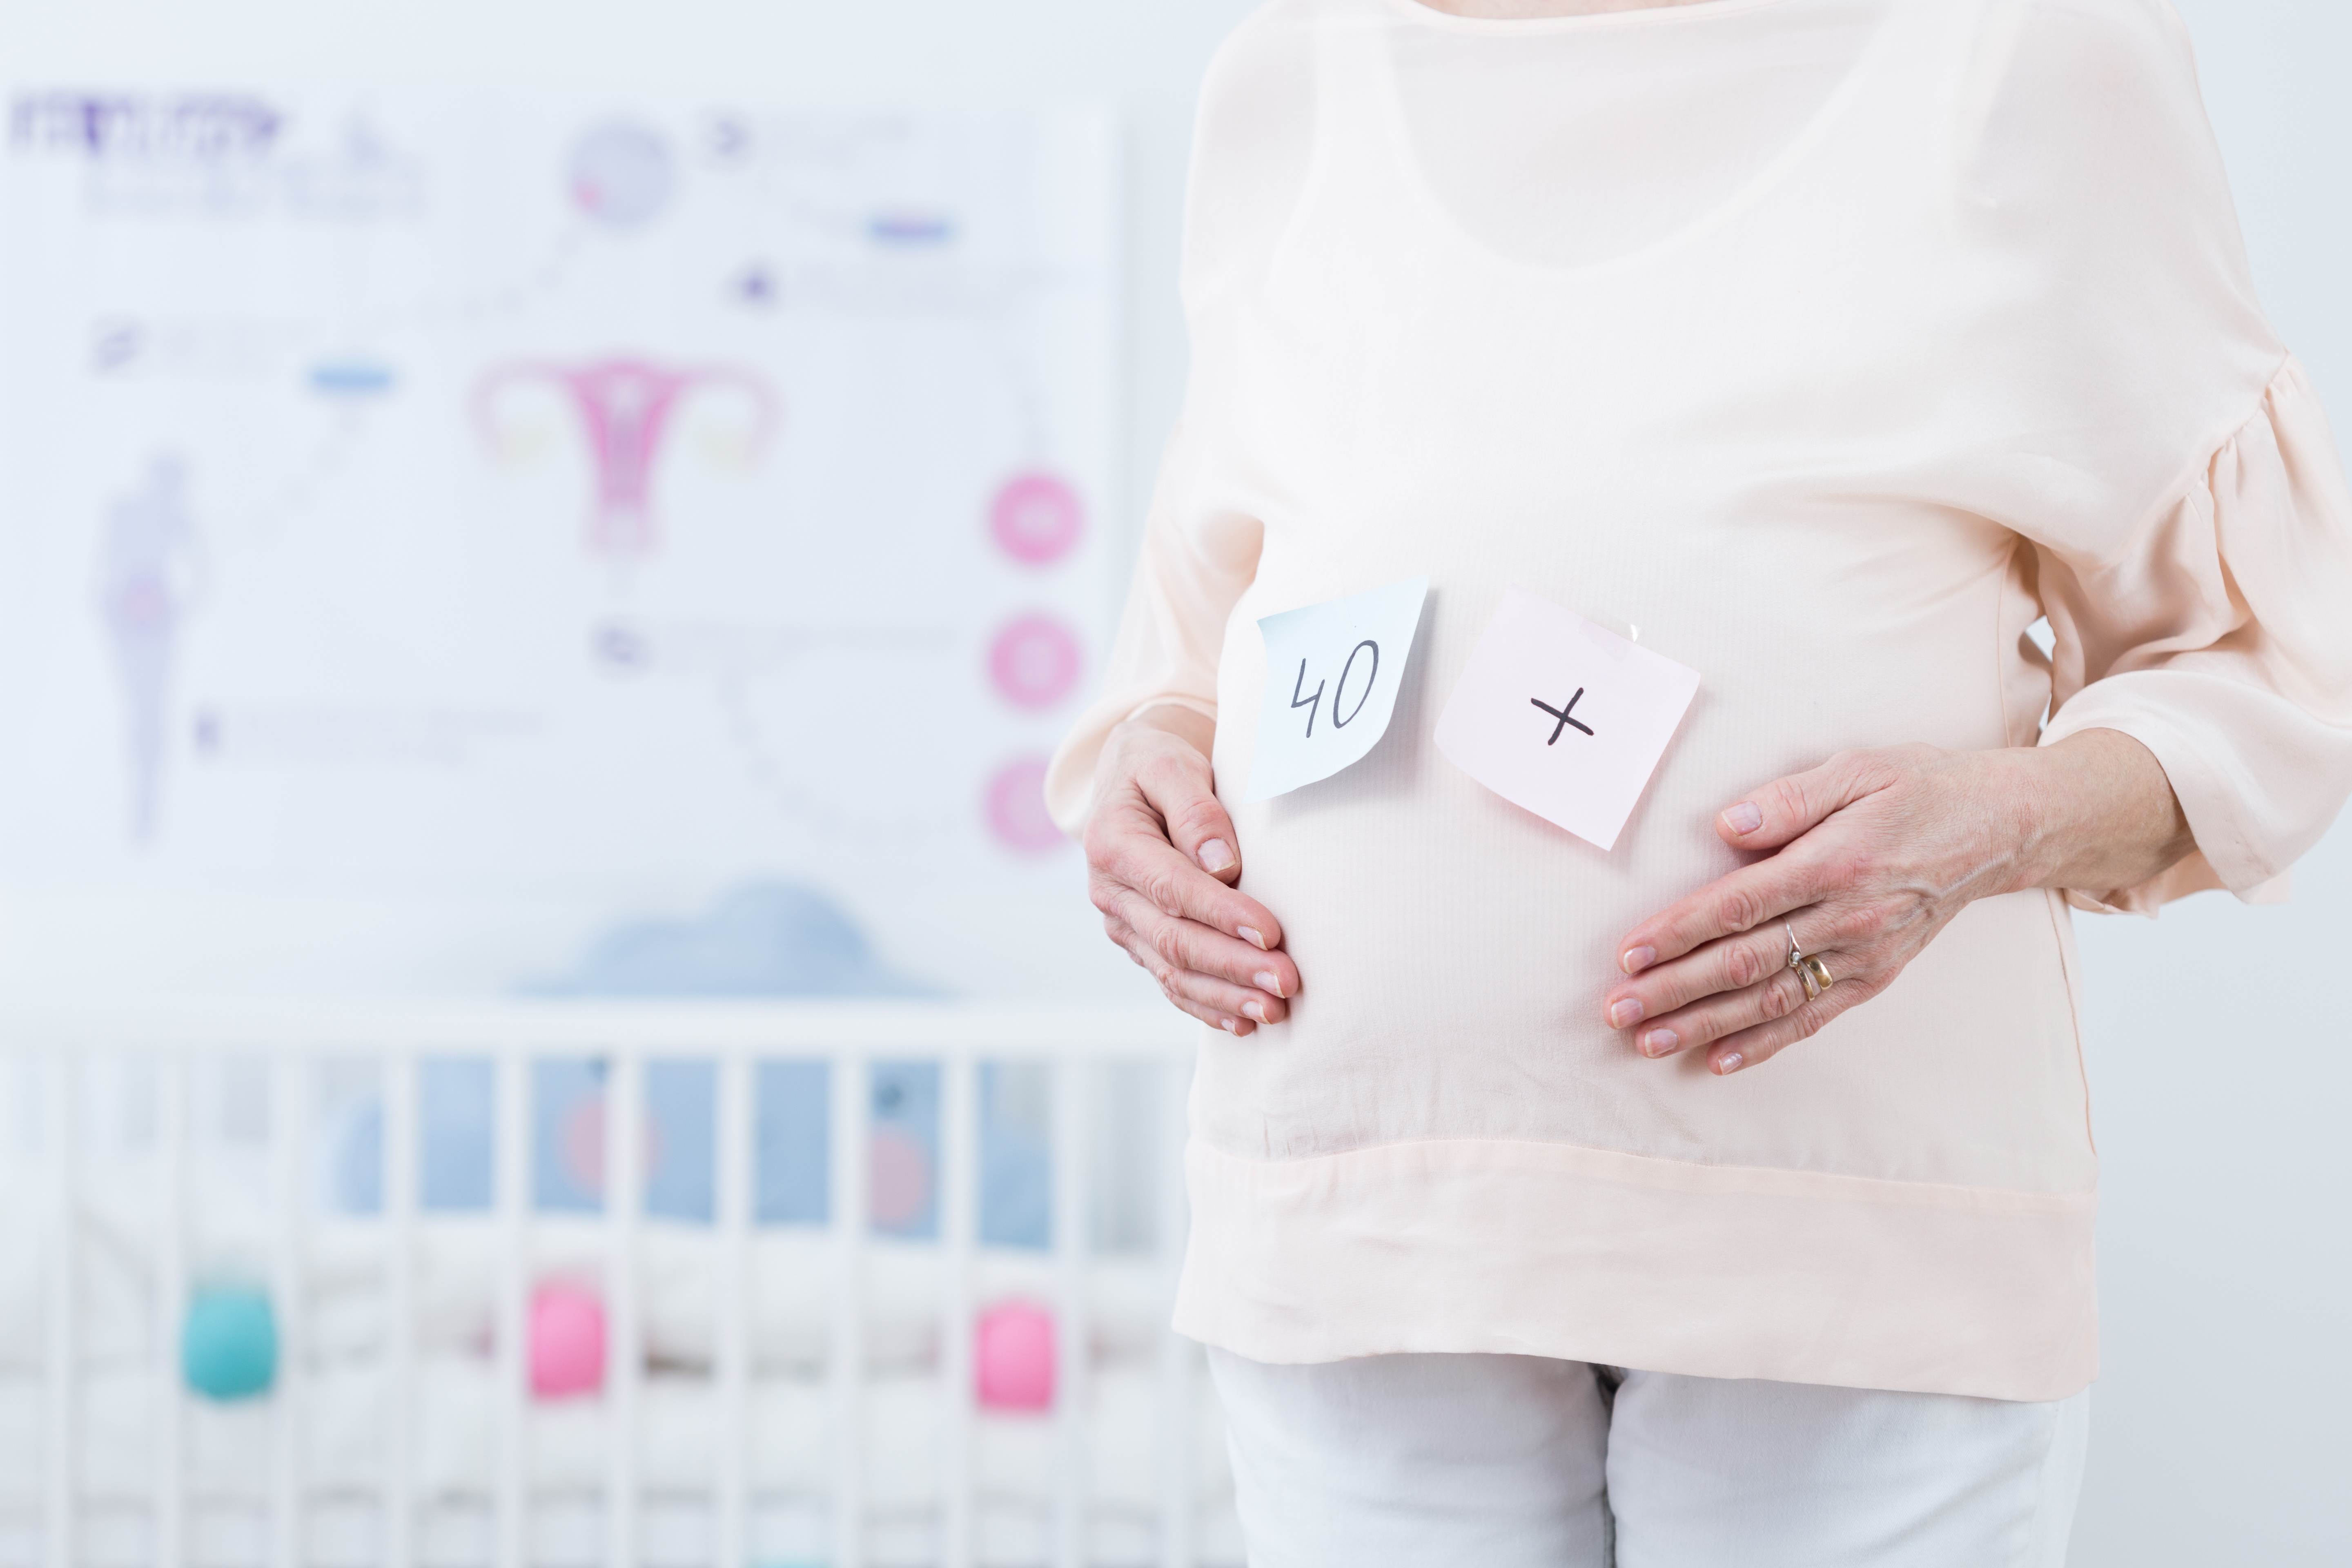 Des modifications du placenta chez les femmes enceintes plus âgées pourraient expliquer un risque accru de problèmes cardiaques chez les bébés garçons